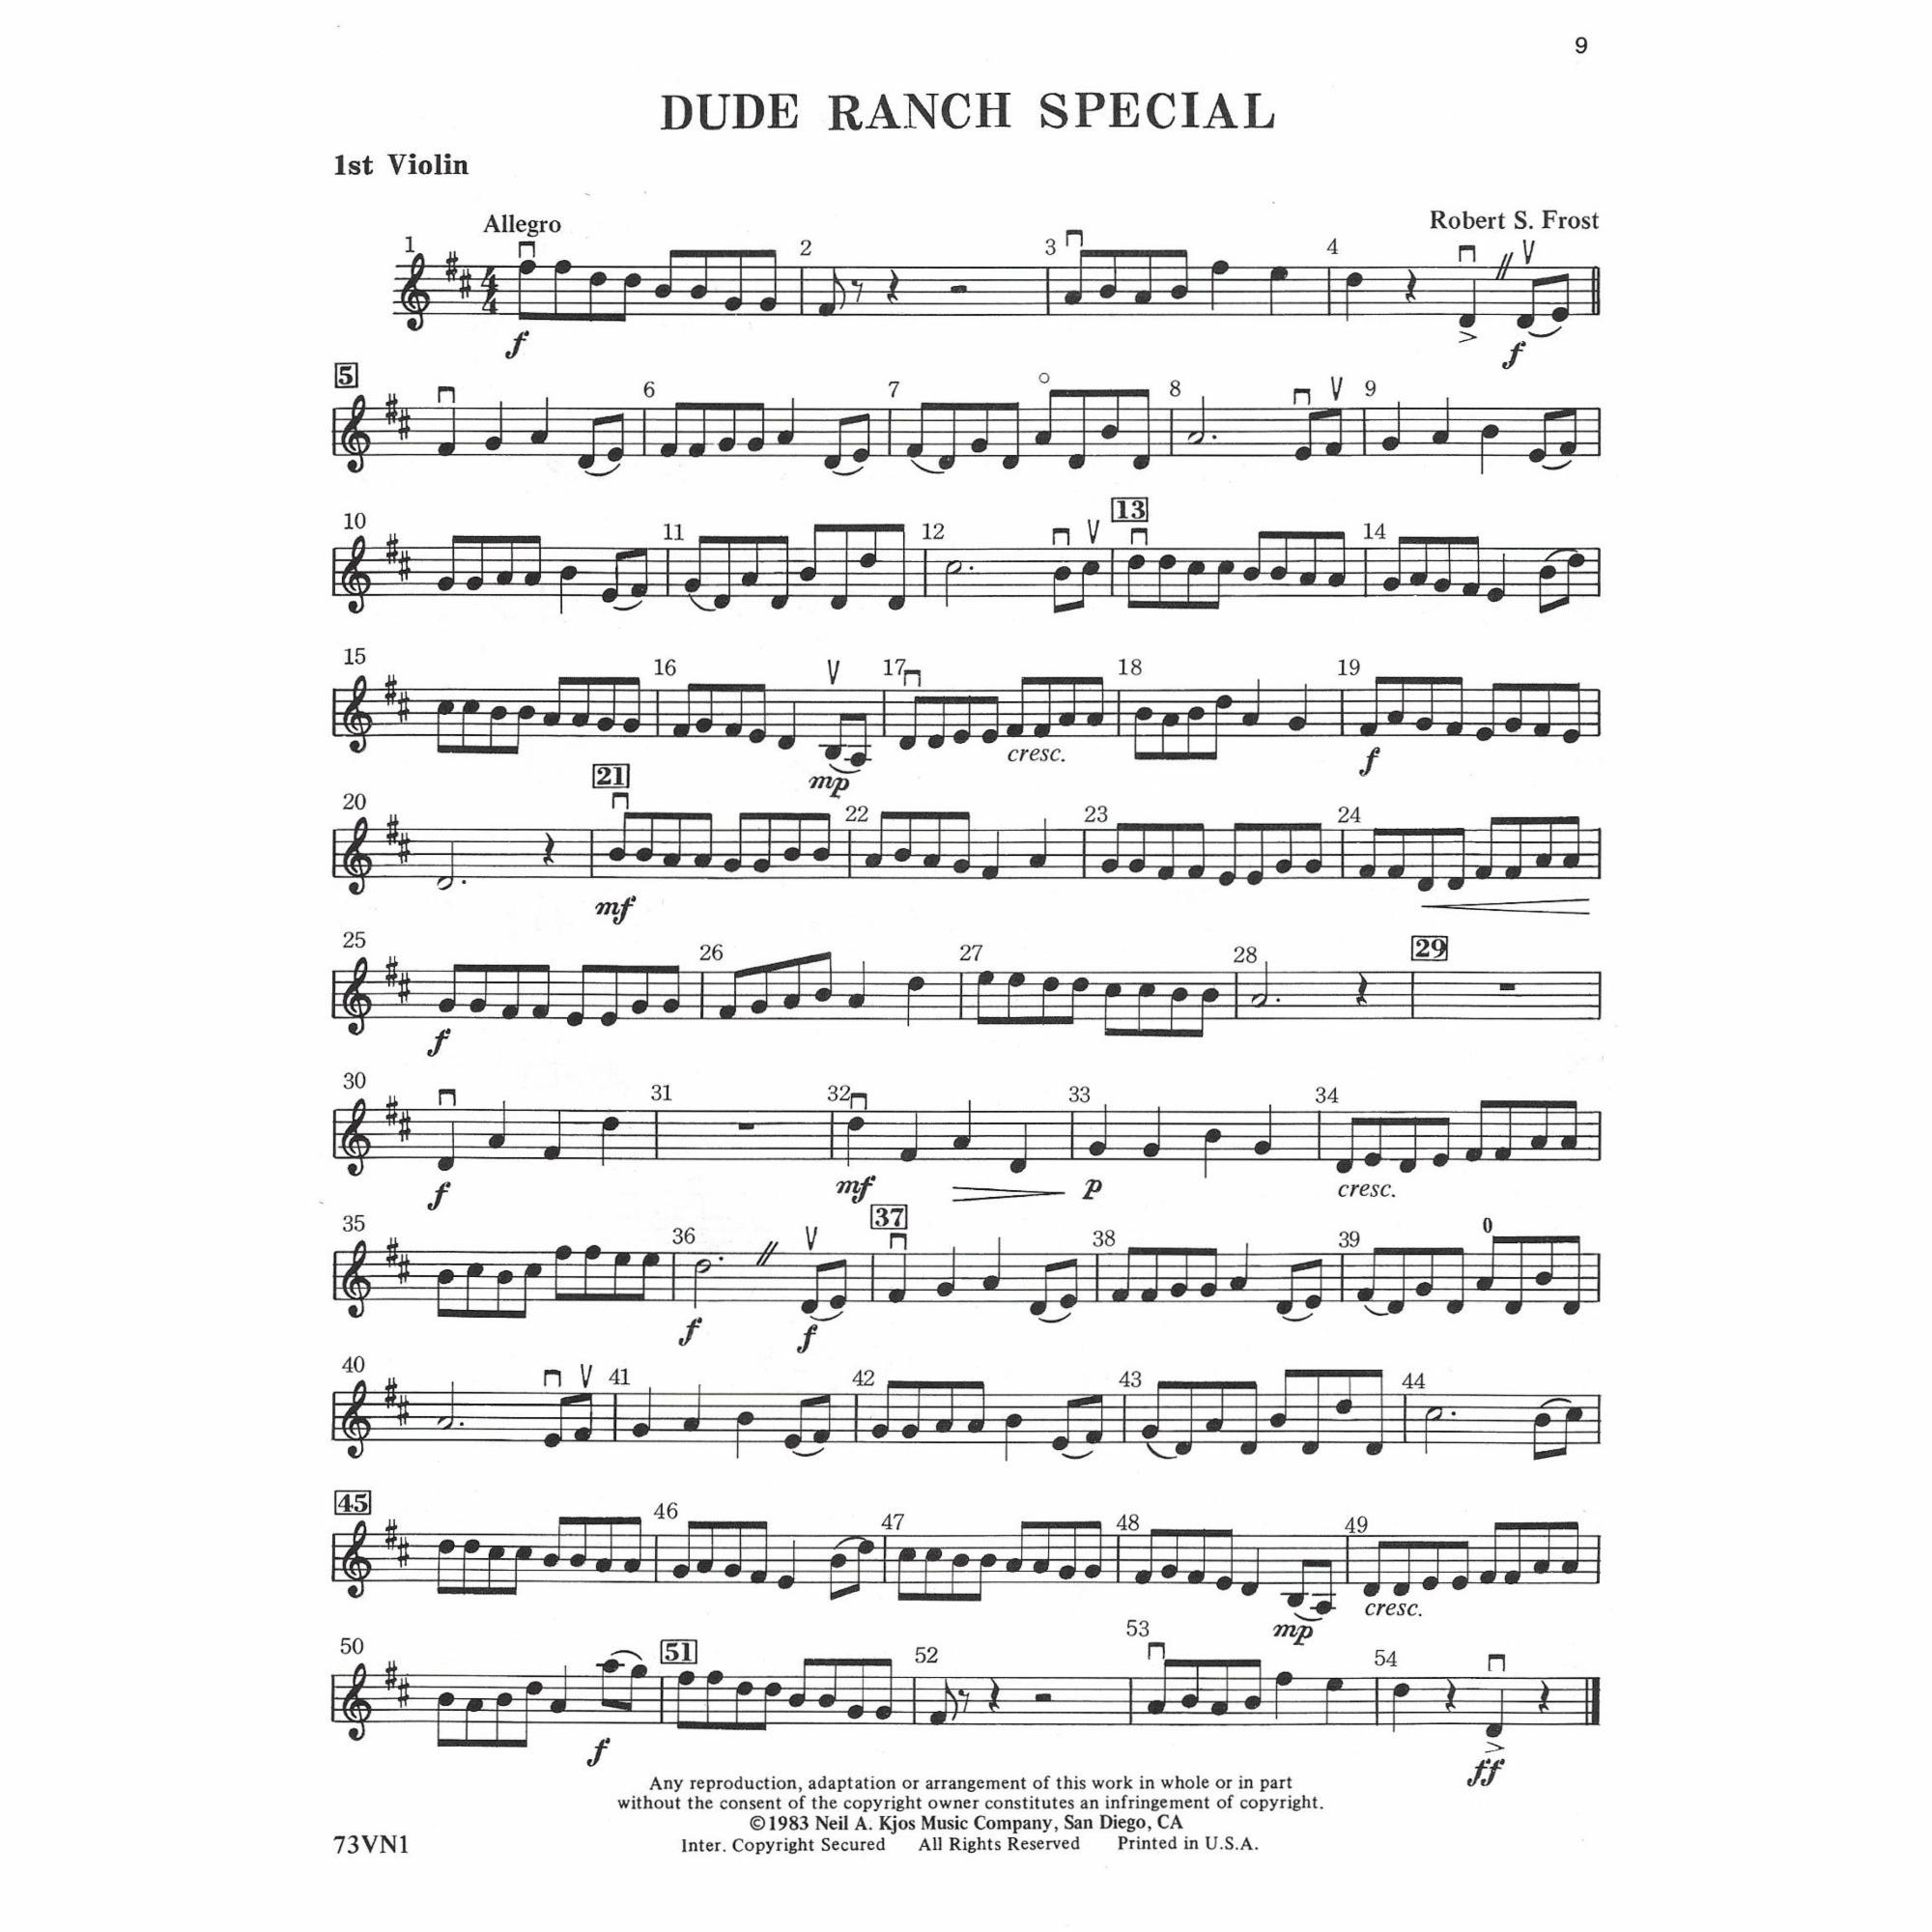 Sample: Violin 1 (Pg. 9)